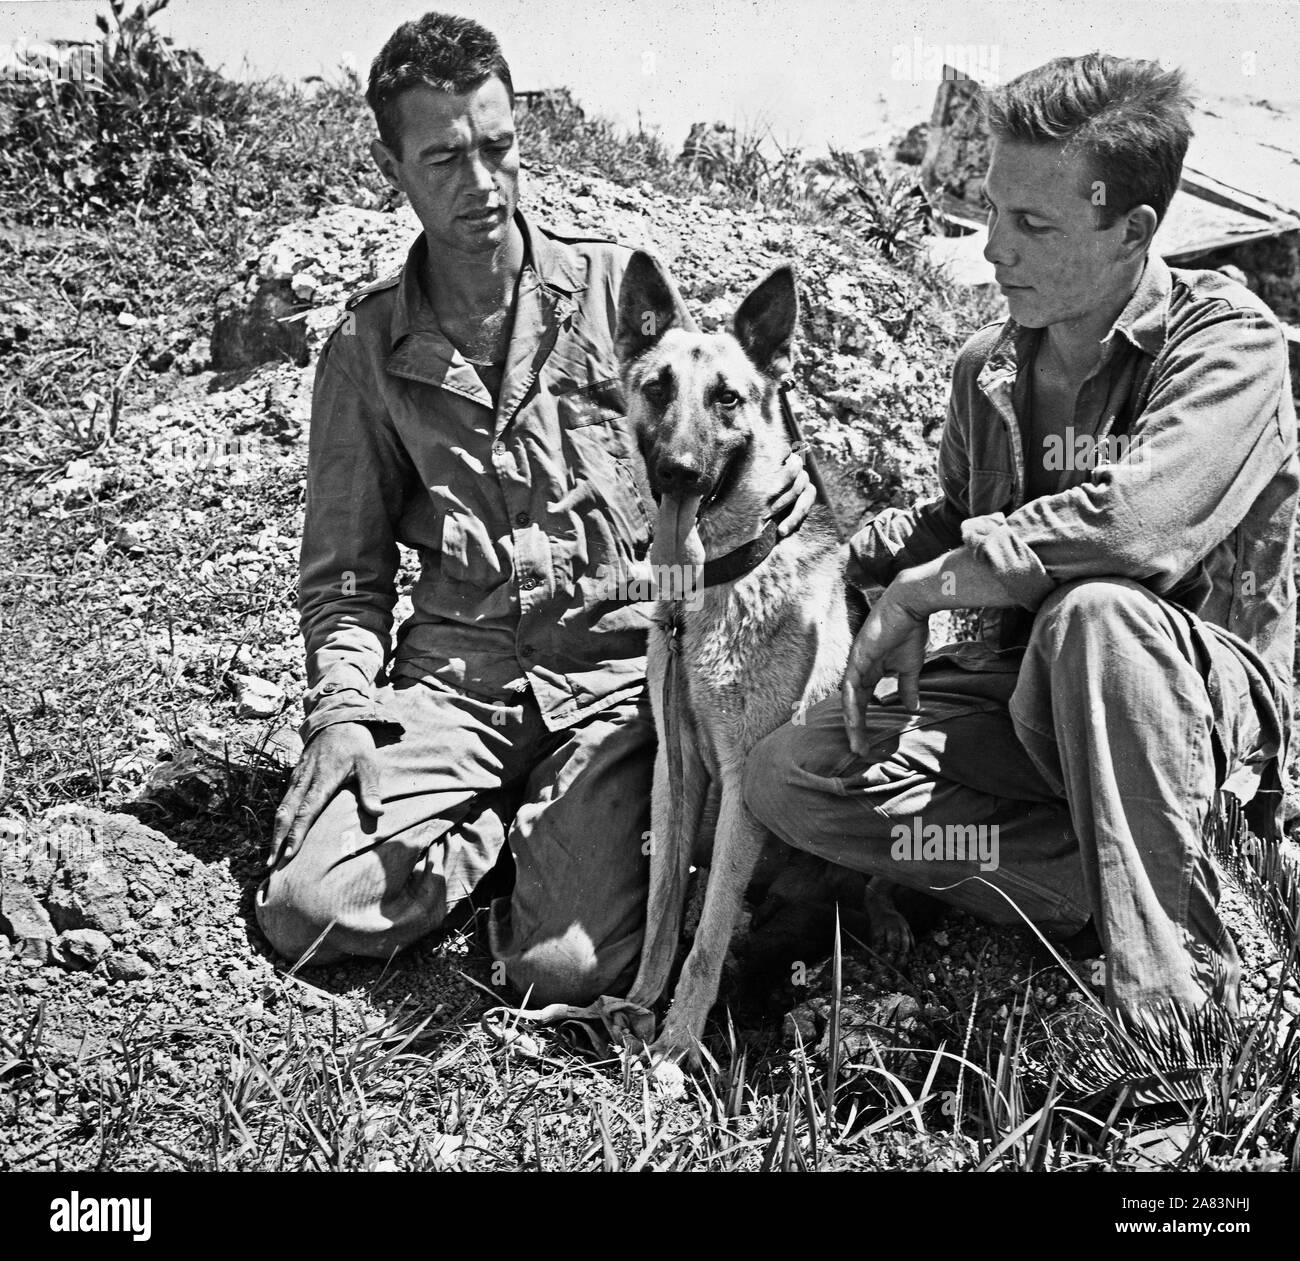 Marines gefunden Dieses japanische Krieg hund Schäferhund versteckt unter einem Rock outcropping, scheinbare Shell schockiert sein, Marines brough Helm voll Wasser für den Hund. Stockfoto